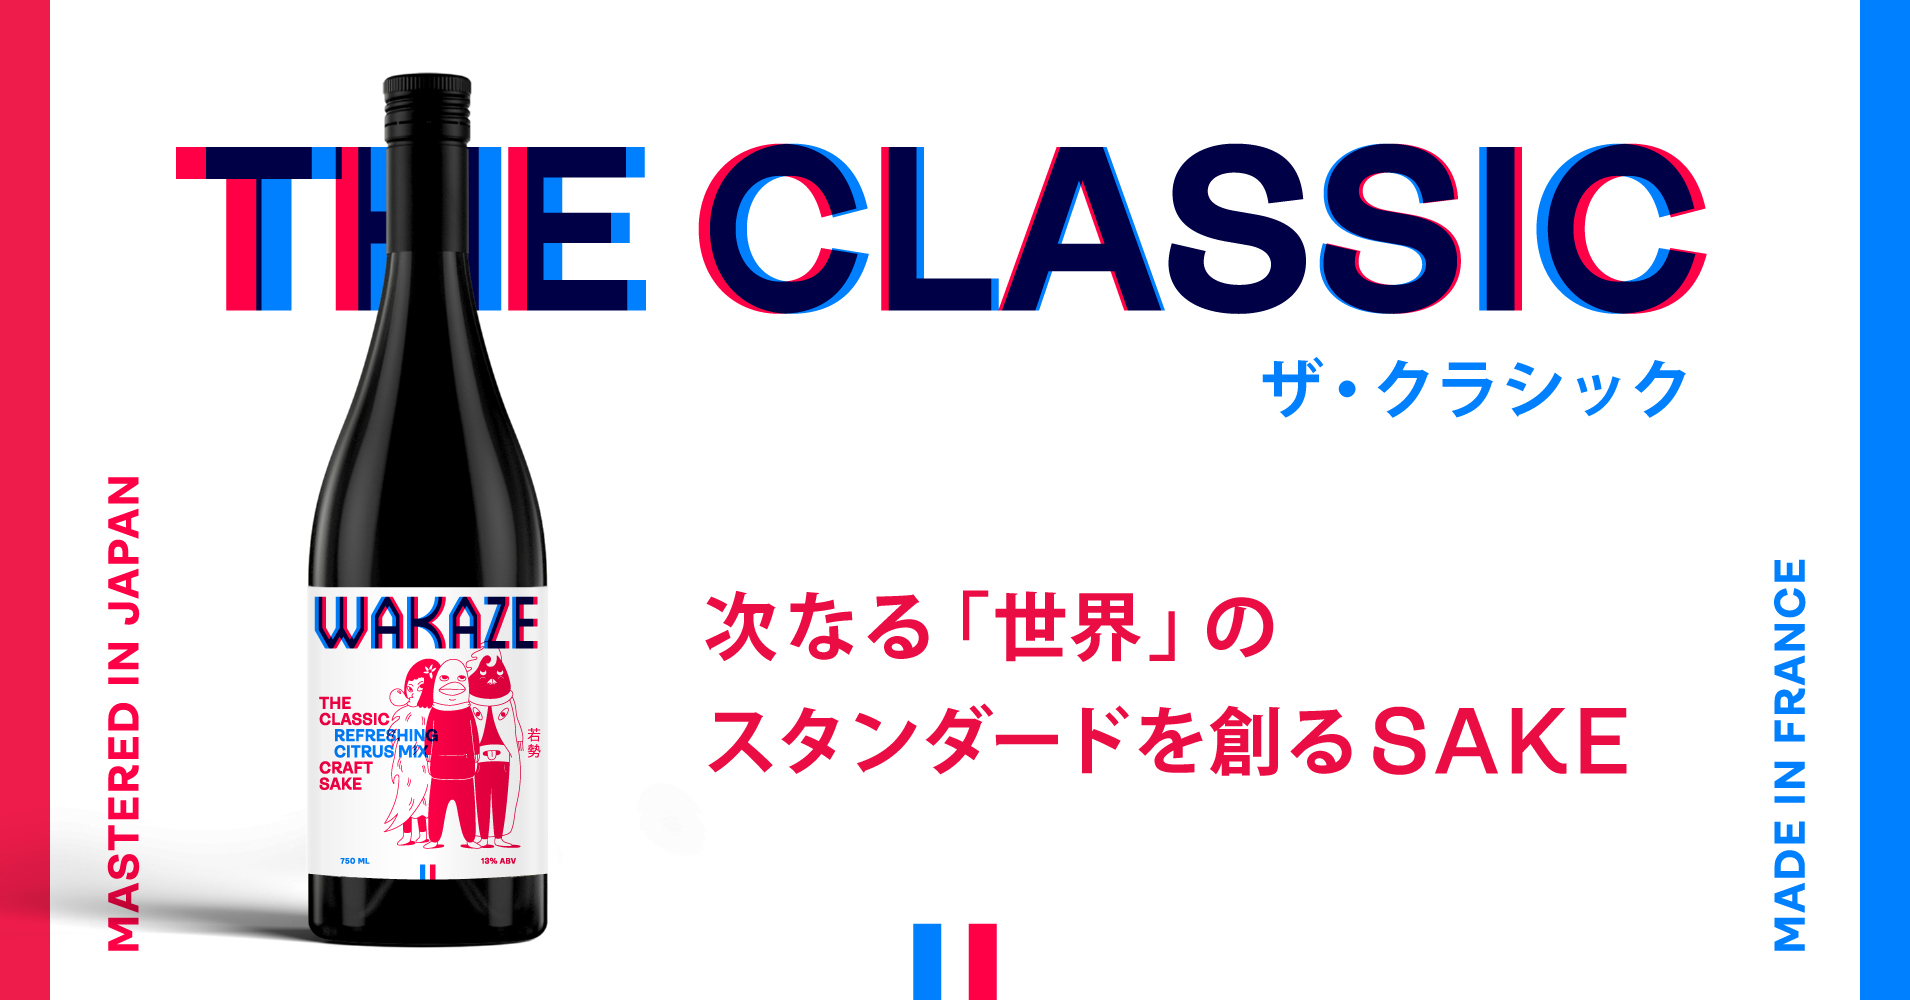 THE CLASSIC」フランスで日本人が醸す『次なる「世界」のスタンダード